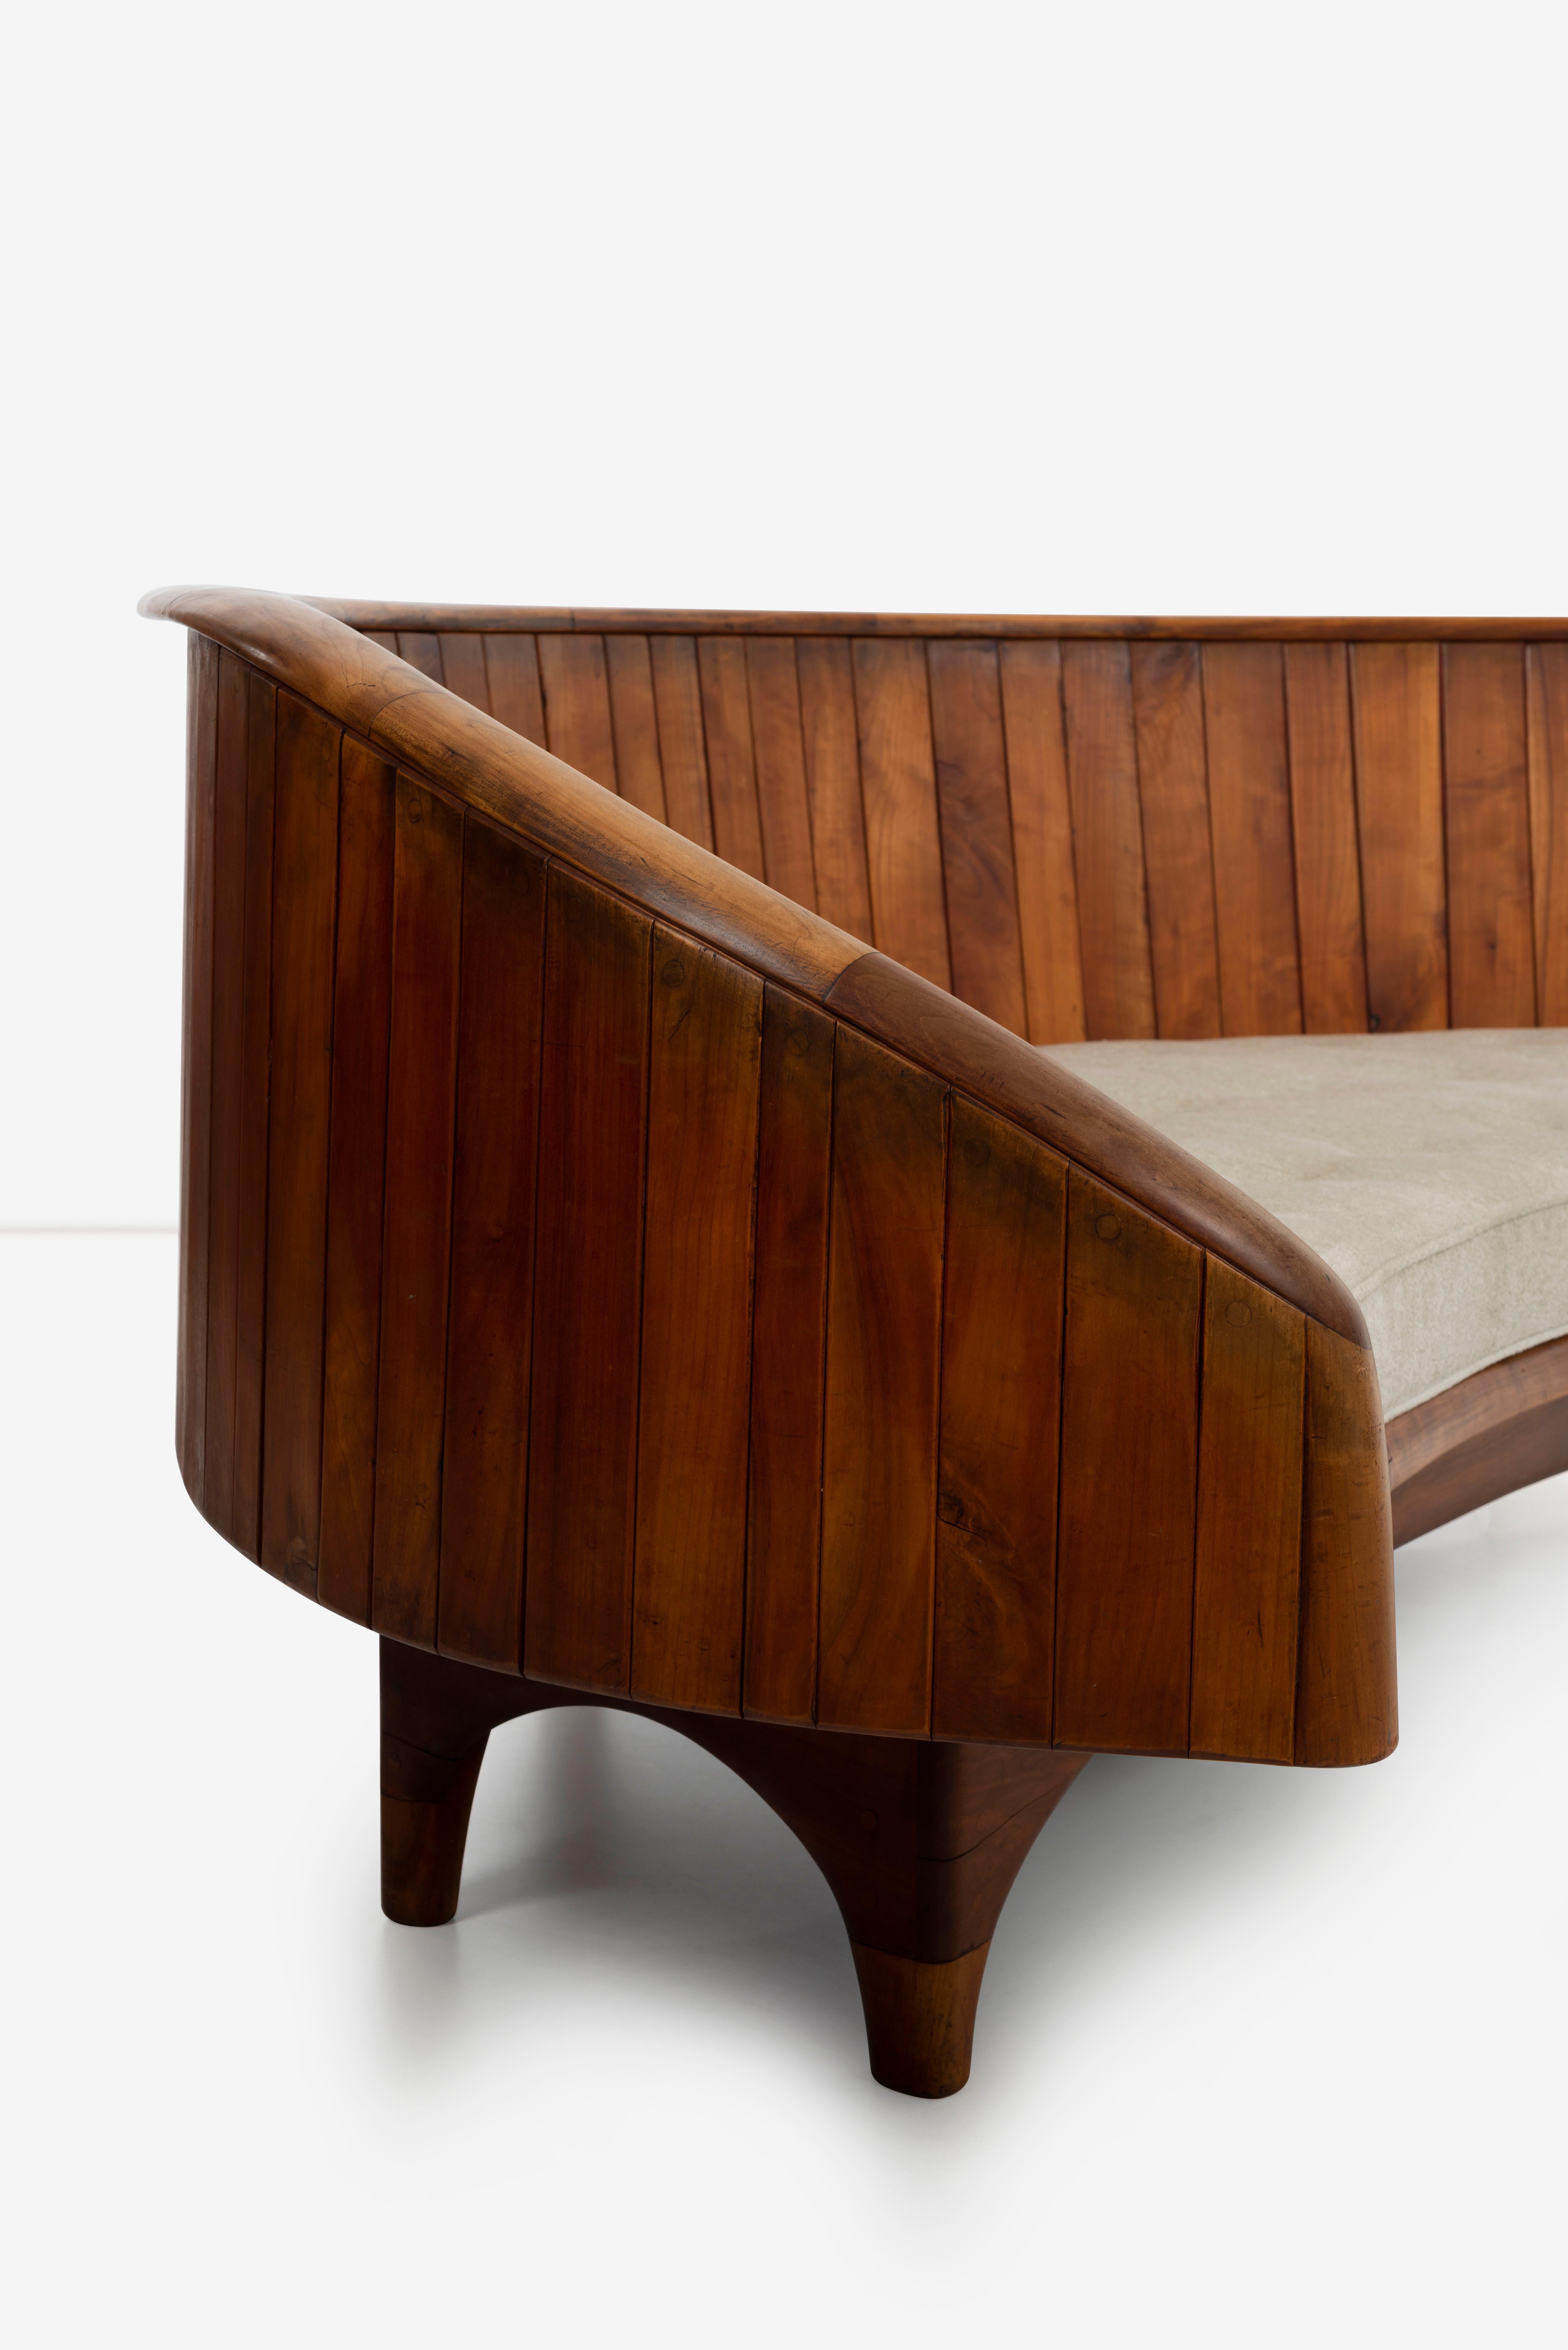 Wharton Esherick Important Sofa In Good Condition For Sale In Chicago, IL